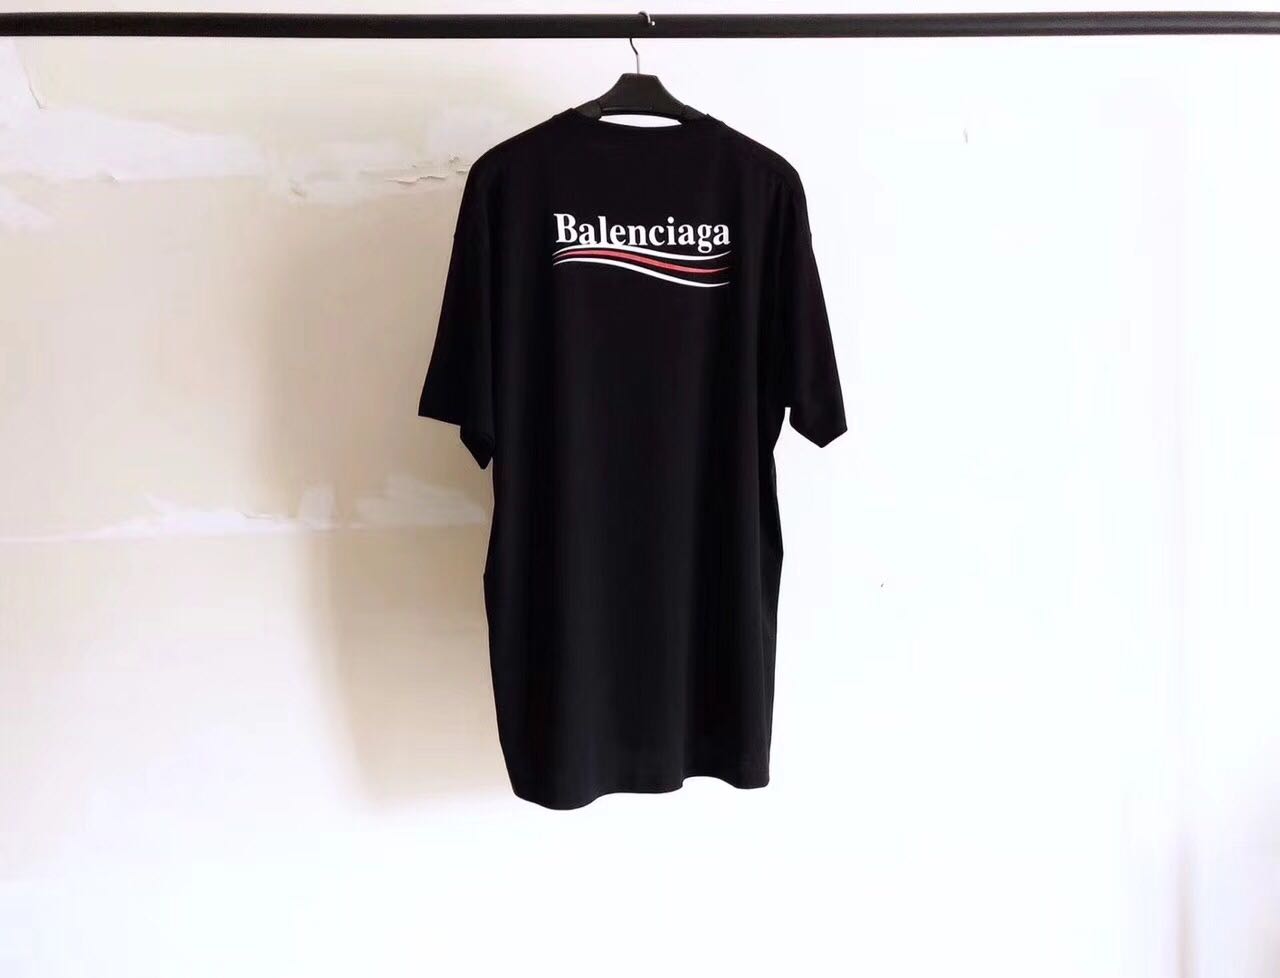 balenciaga t shirt 2018 price